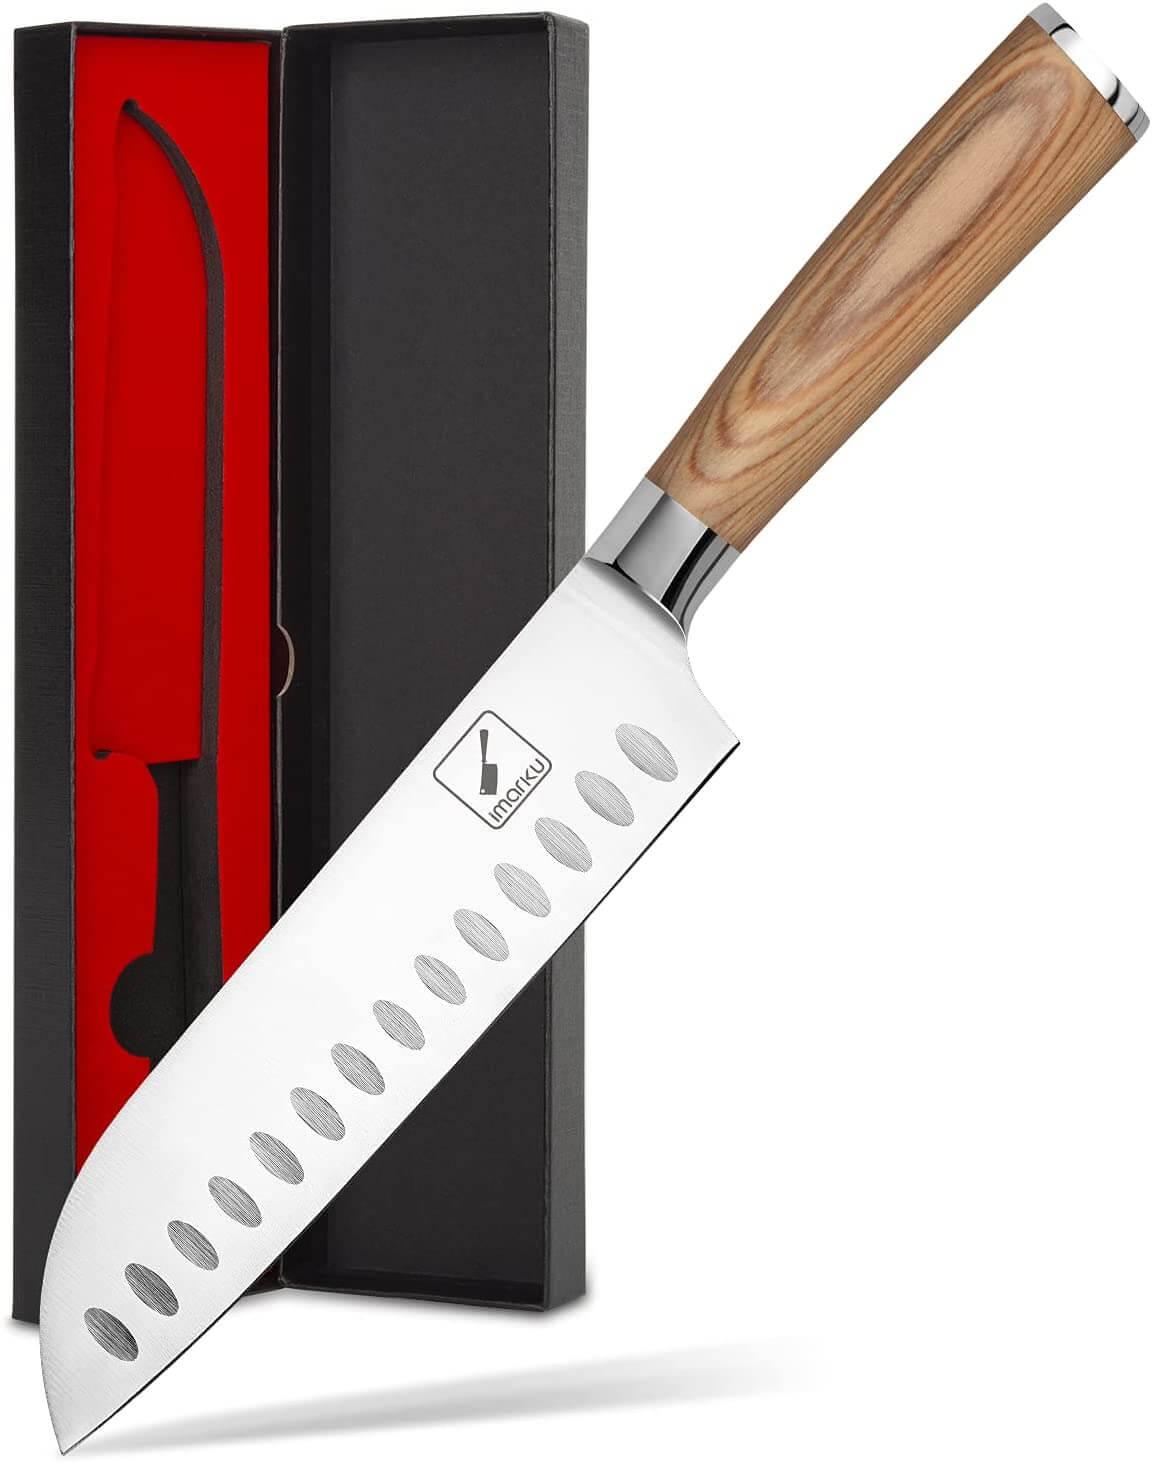 imarku 7‘’ Santoku Knife With Wooden Handle - IMARKU